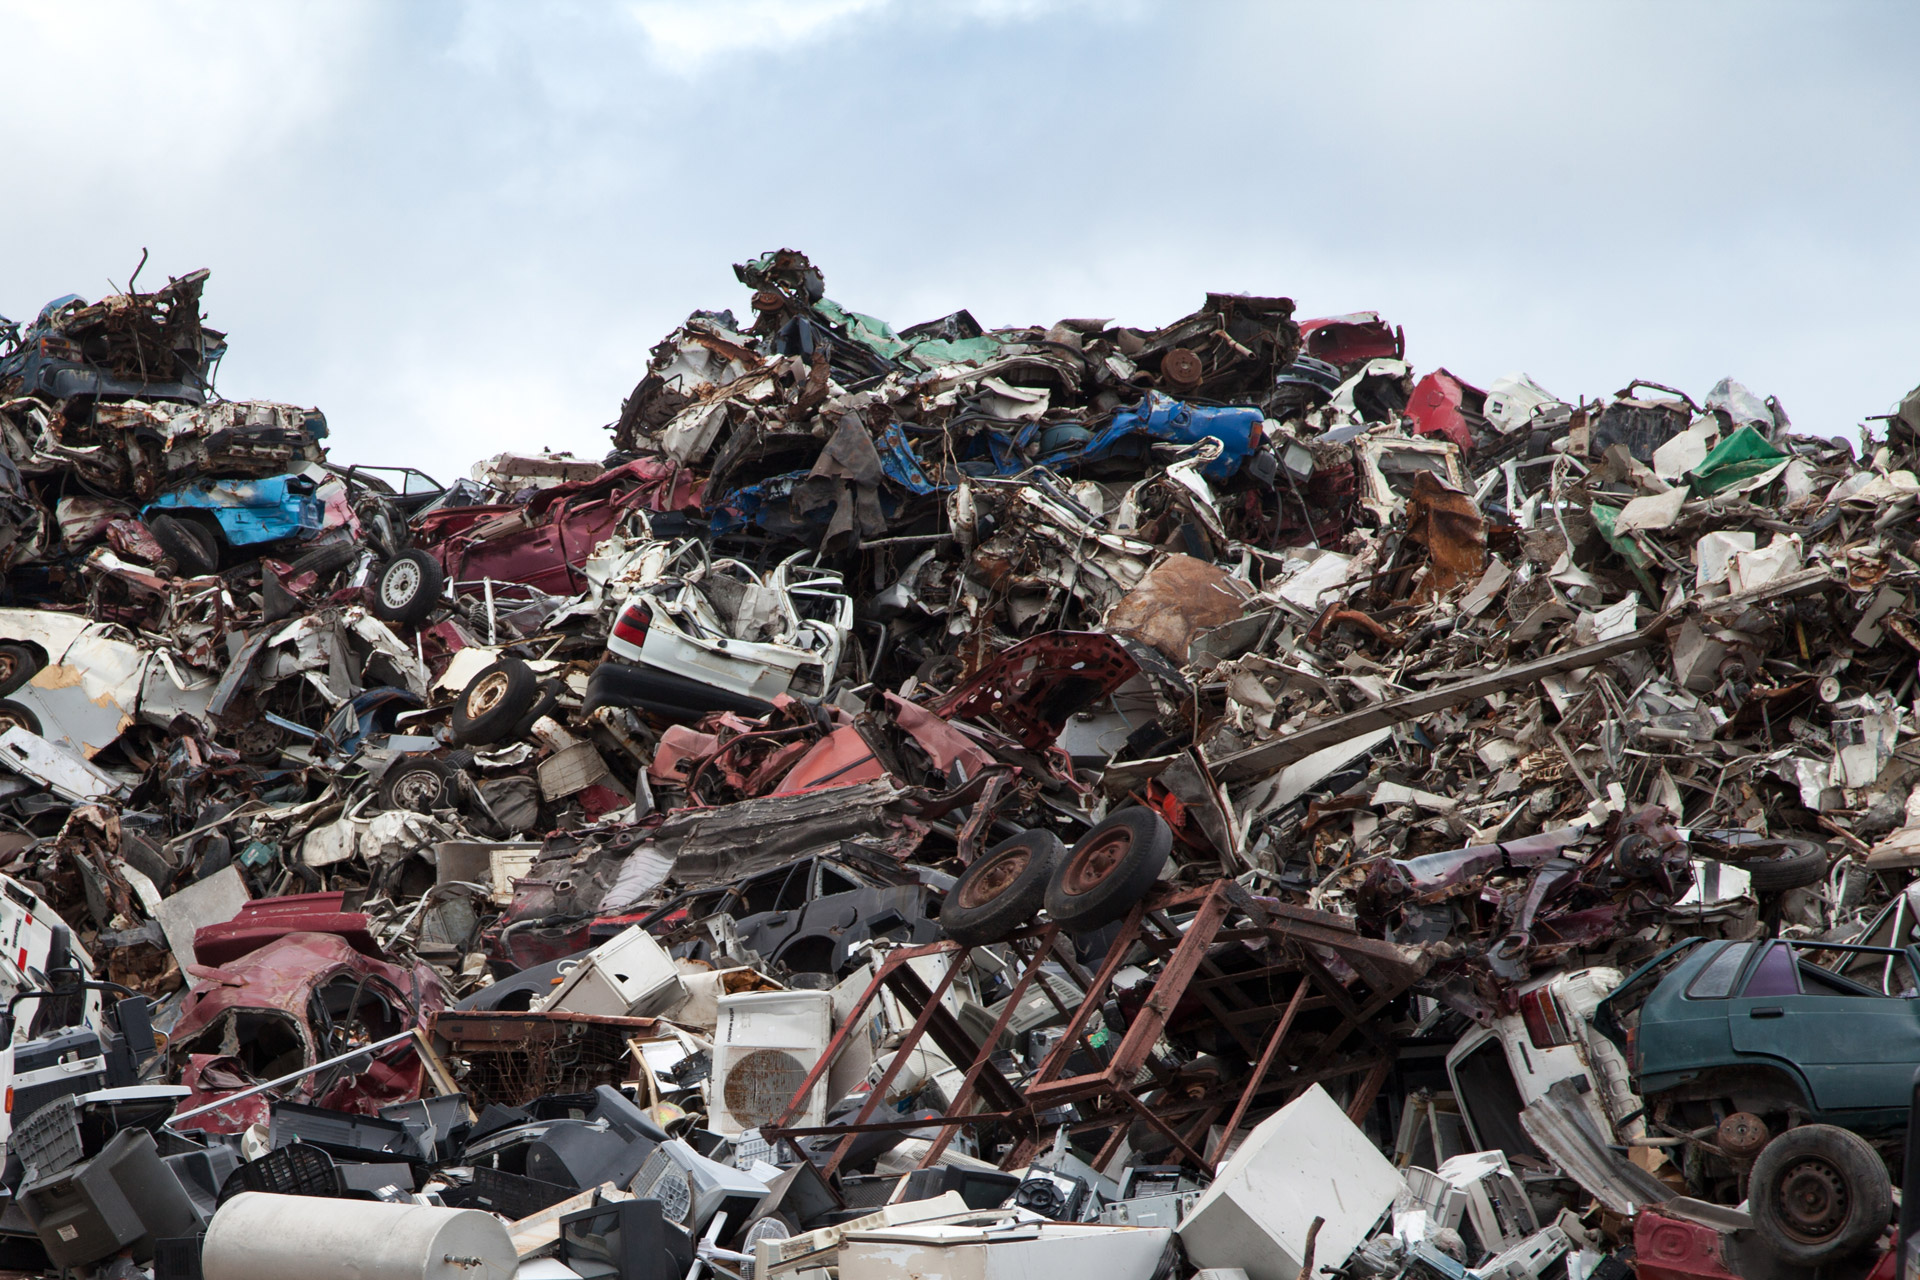 scrapyard recycling dump free photo